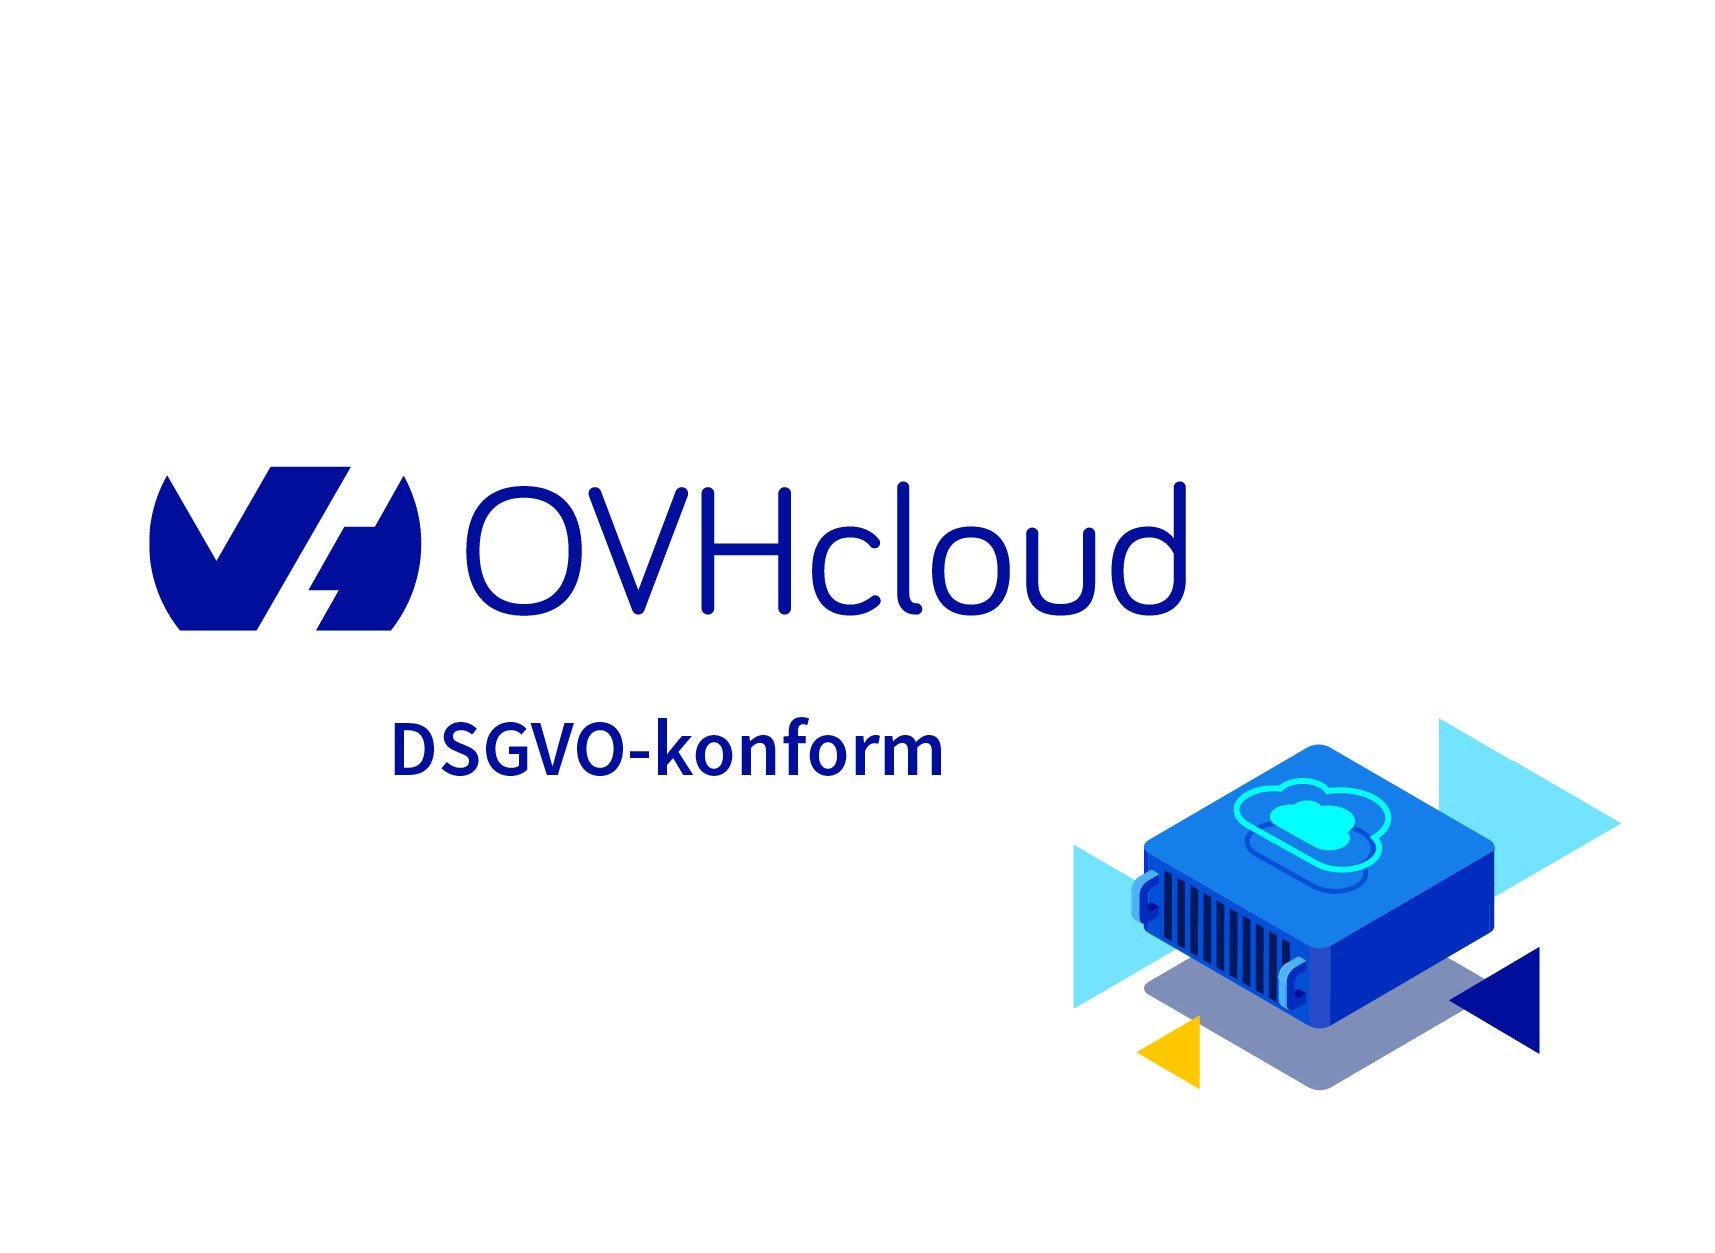 OVHcloud DSGVO Konform JK V2 (2)